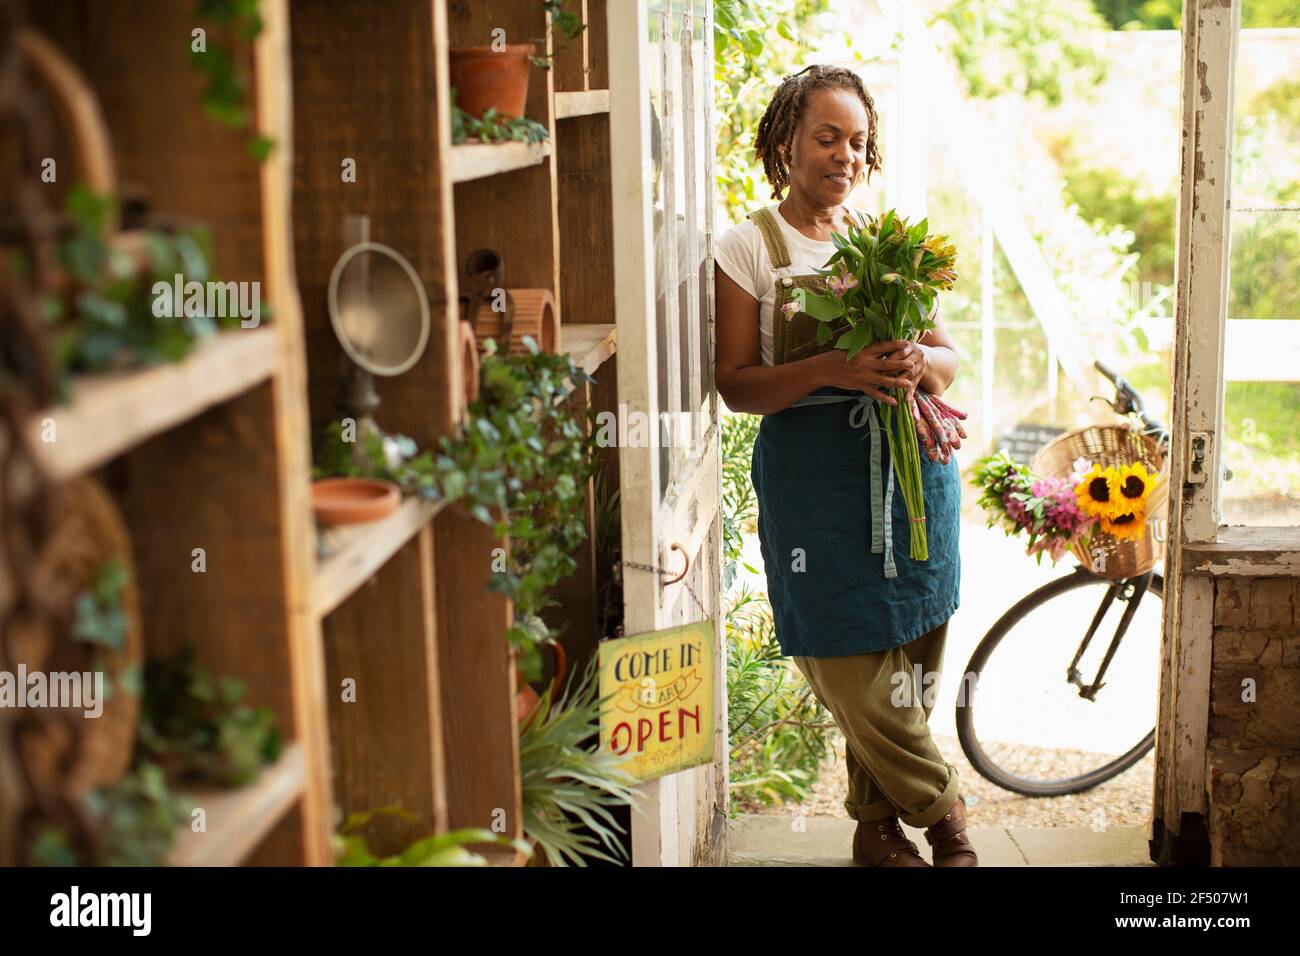 Weibliche Floristin hält Blumenstrauß in Shop Eingang Stockfoto